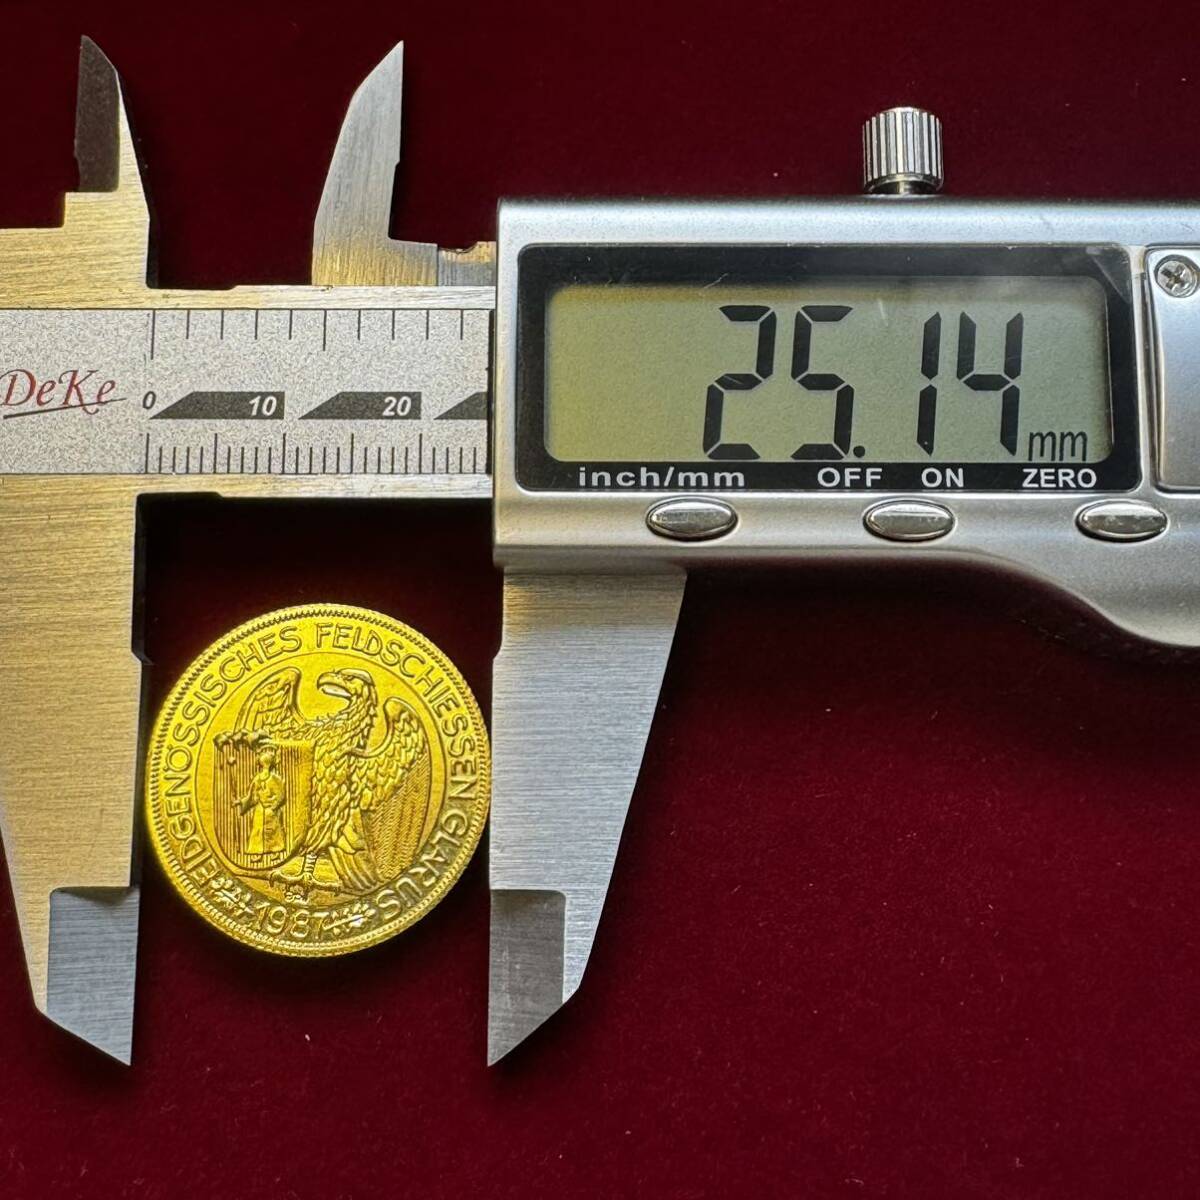 スイス 硬貨 古銭 1987年 グラールス射撃祭 グラールスの腕を掴むワシ ライフル 旗 50フラン 記念メダル コイン 金貨 外国古銭 海外硬貨 の画像4